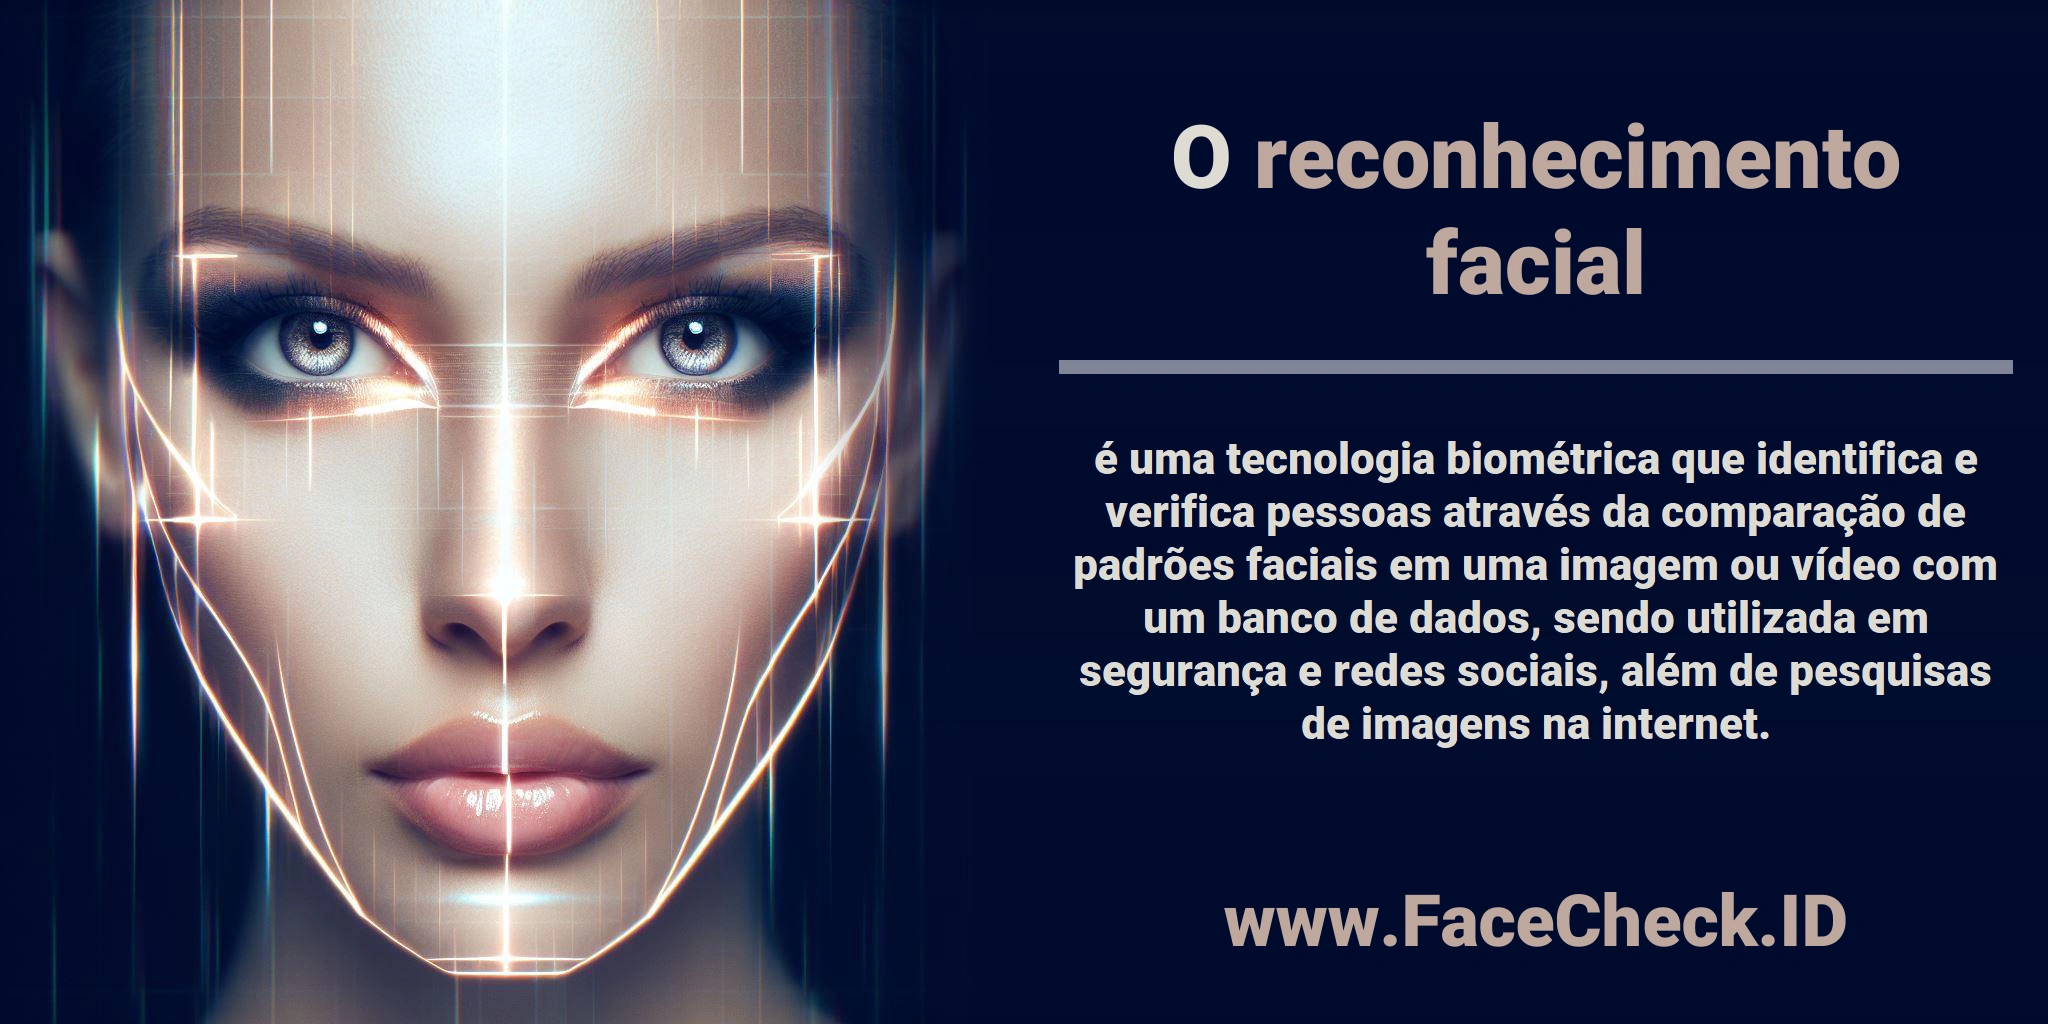 O <b>reconhecimento facial</b> é uma tecnologia biométrica que identifica e verifica pessoas através da comparação de padrões faciais em uma imagem ou vídeo com um banco de dados, sendo utilizada em segurança e redes sociais, além de pesquisas de imagens na internet.